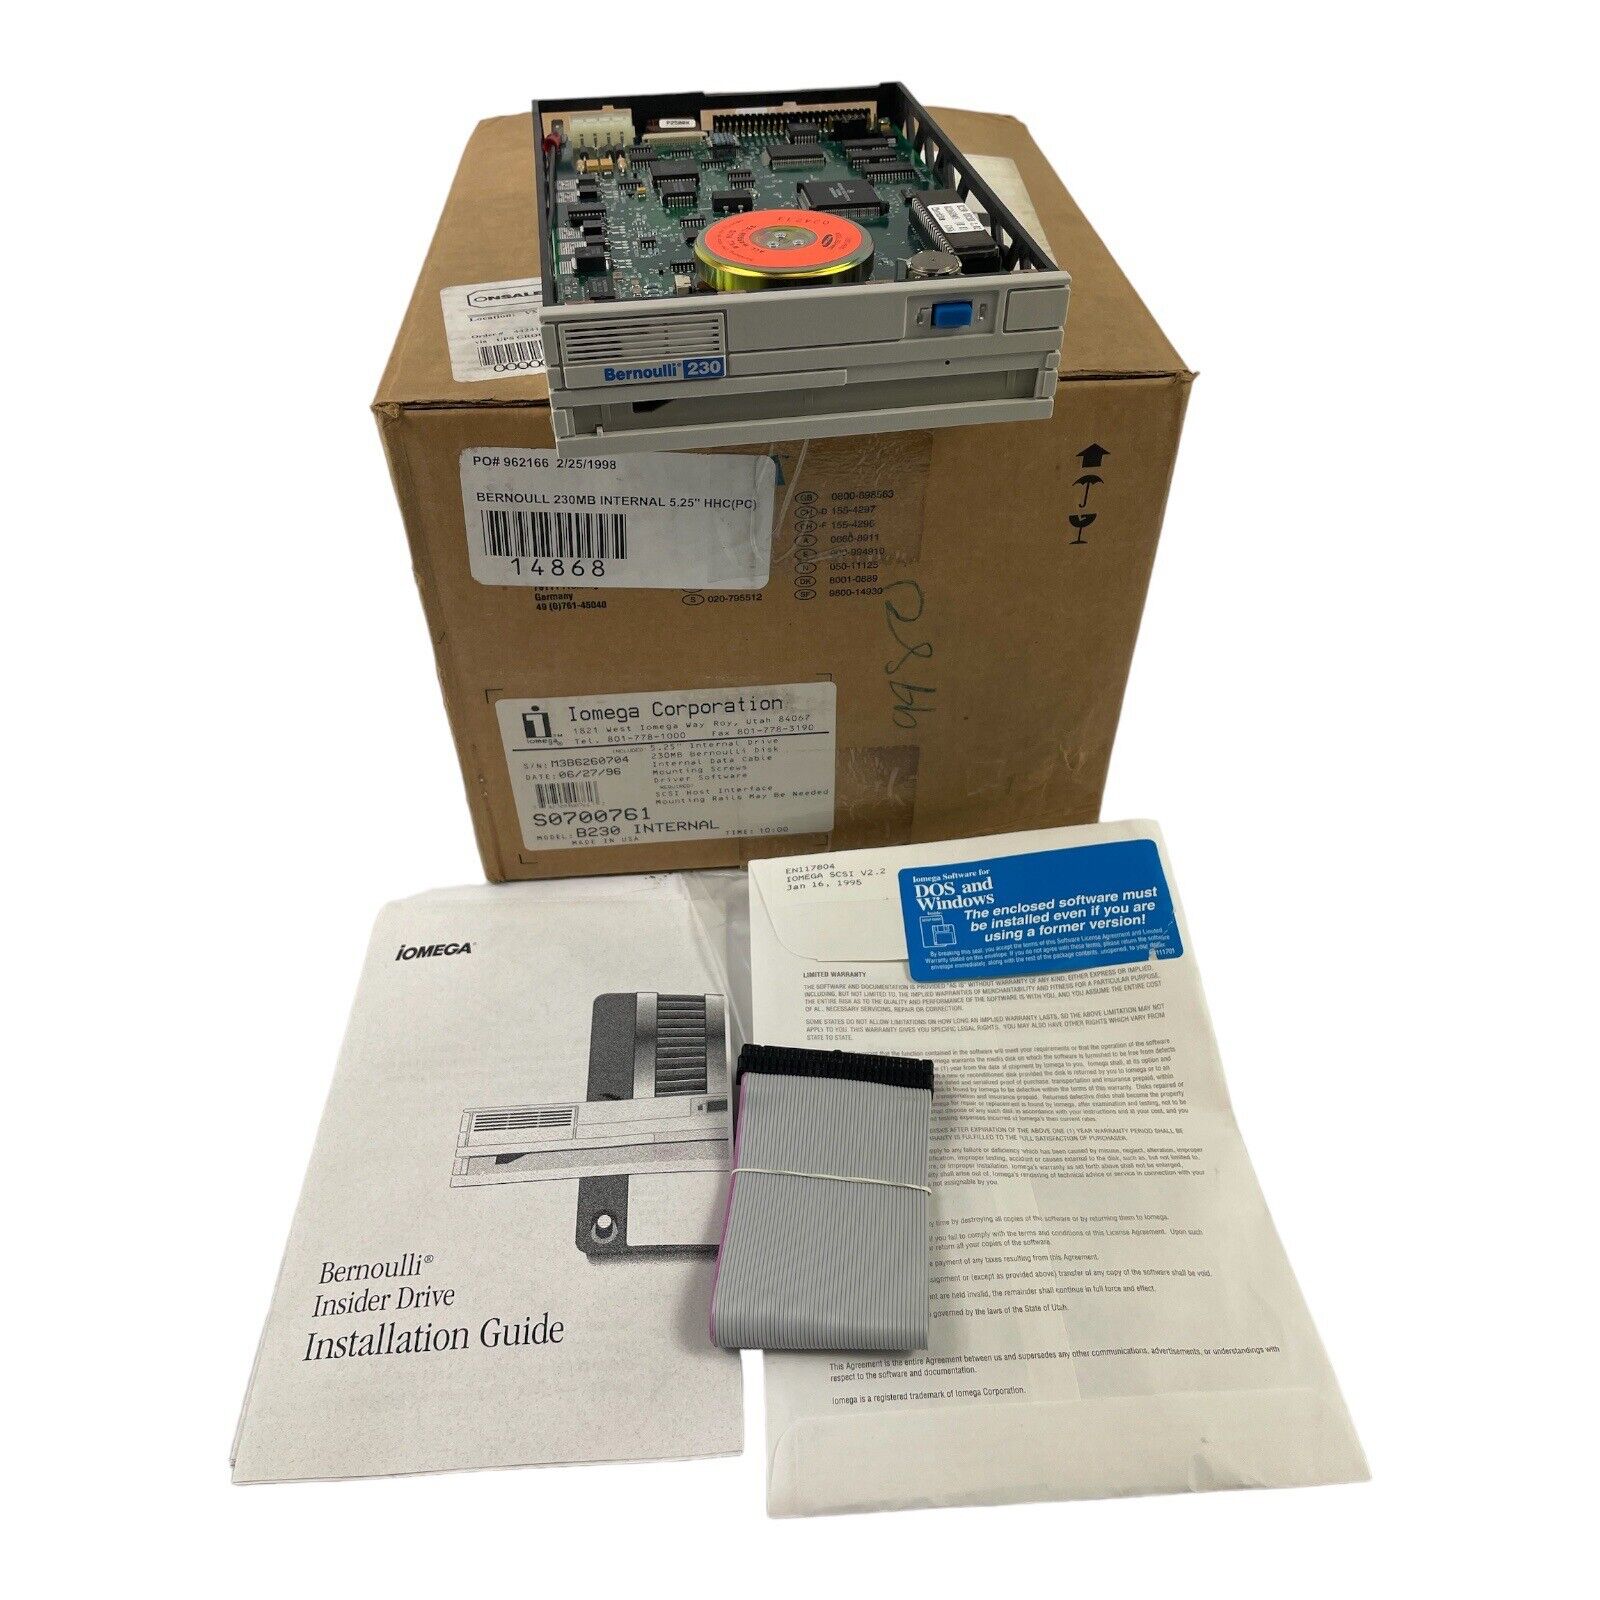 Iomega Bernoulli 230 mb  Pro Mac INTERNAL SCSI DRIVE - In original packaging